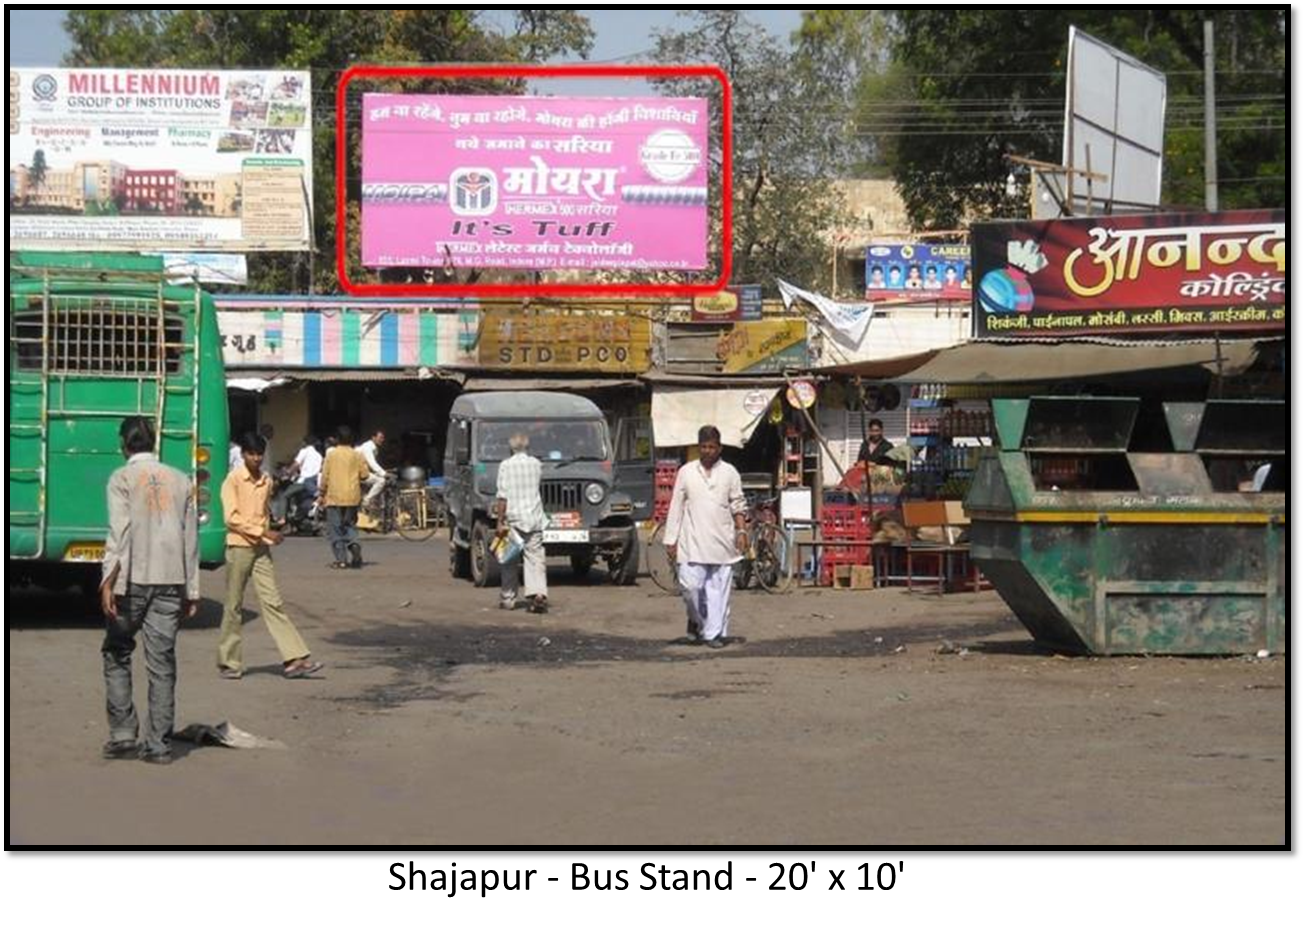 Billboard - Bus Station, Shajapur, Madhya Pradesh